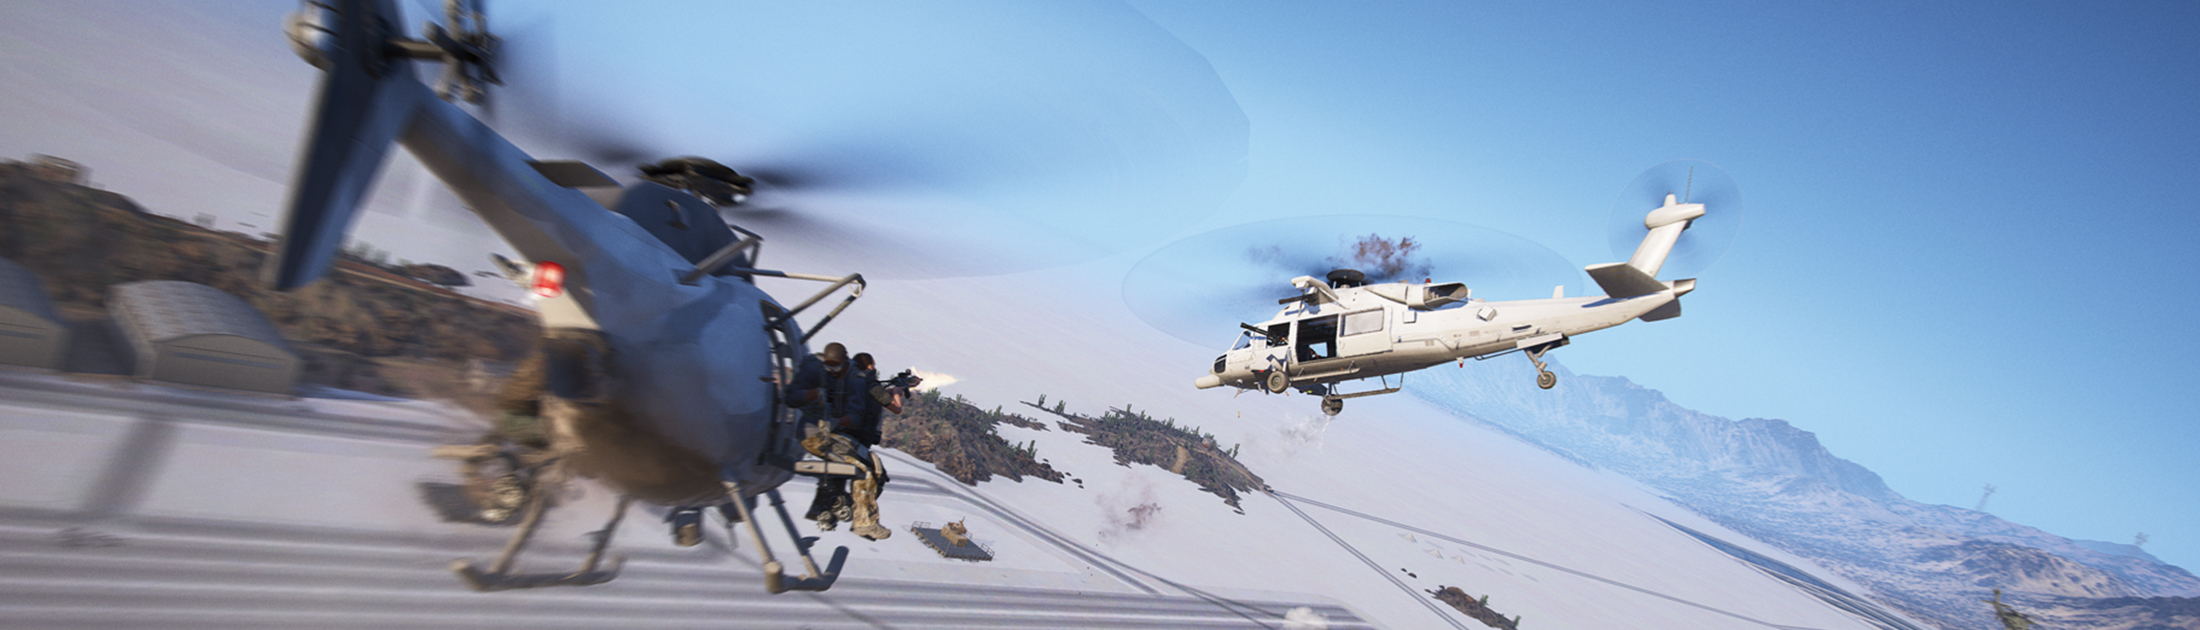 Ghost Recon: Wildlands — в 6 обновлении улучшено управление вертолётом